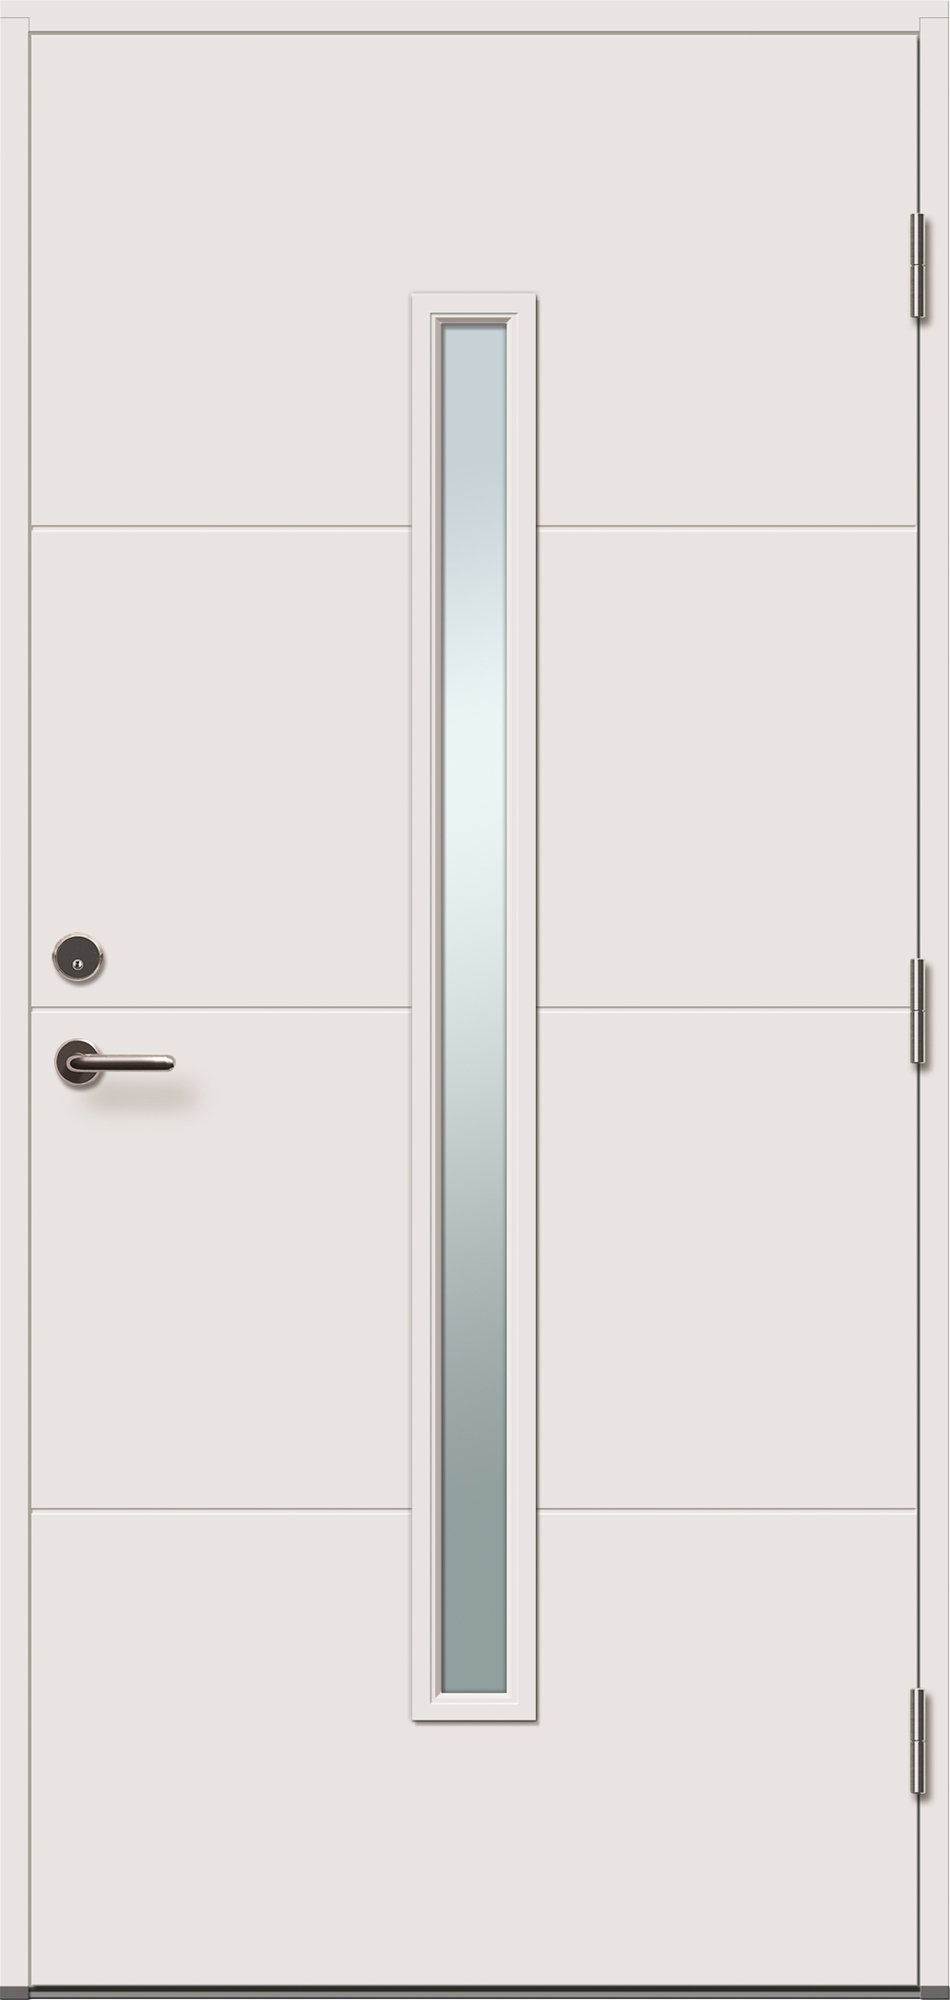 Lauko durys VILJANDI STORO 1R, balta sp., 890 x 2088 mm, dešinė